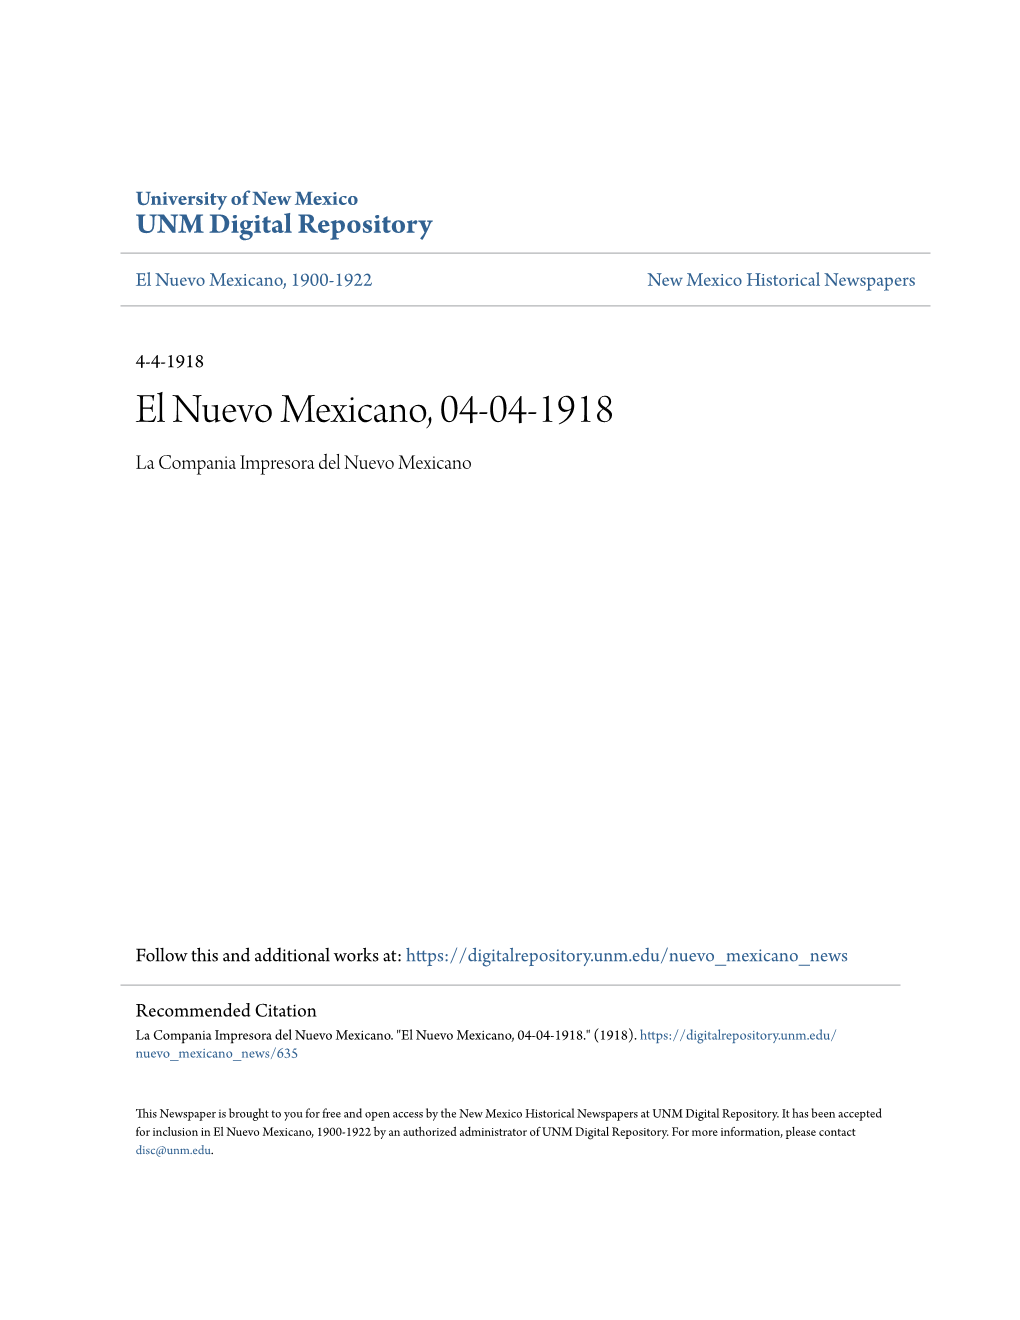 El Nuevo Mexicano, 04-04-1918 La Compania Impresora Del Nuevo Mexicano